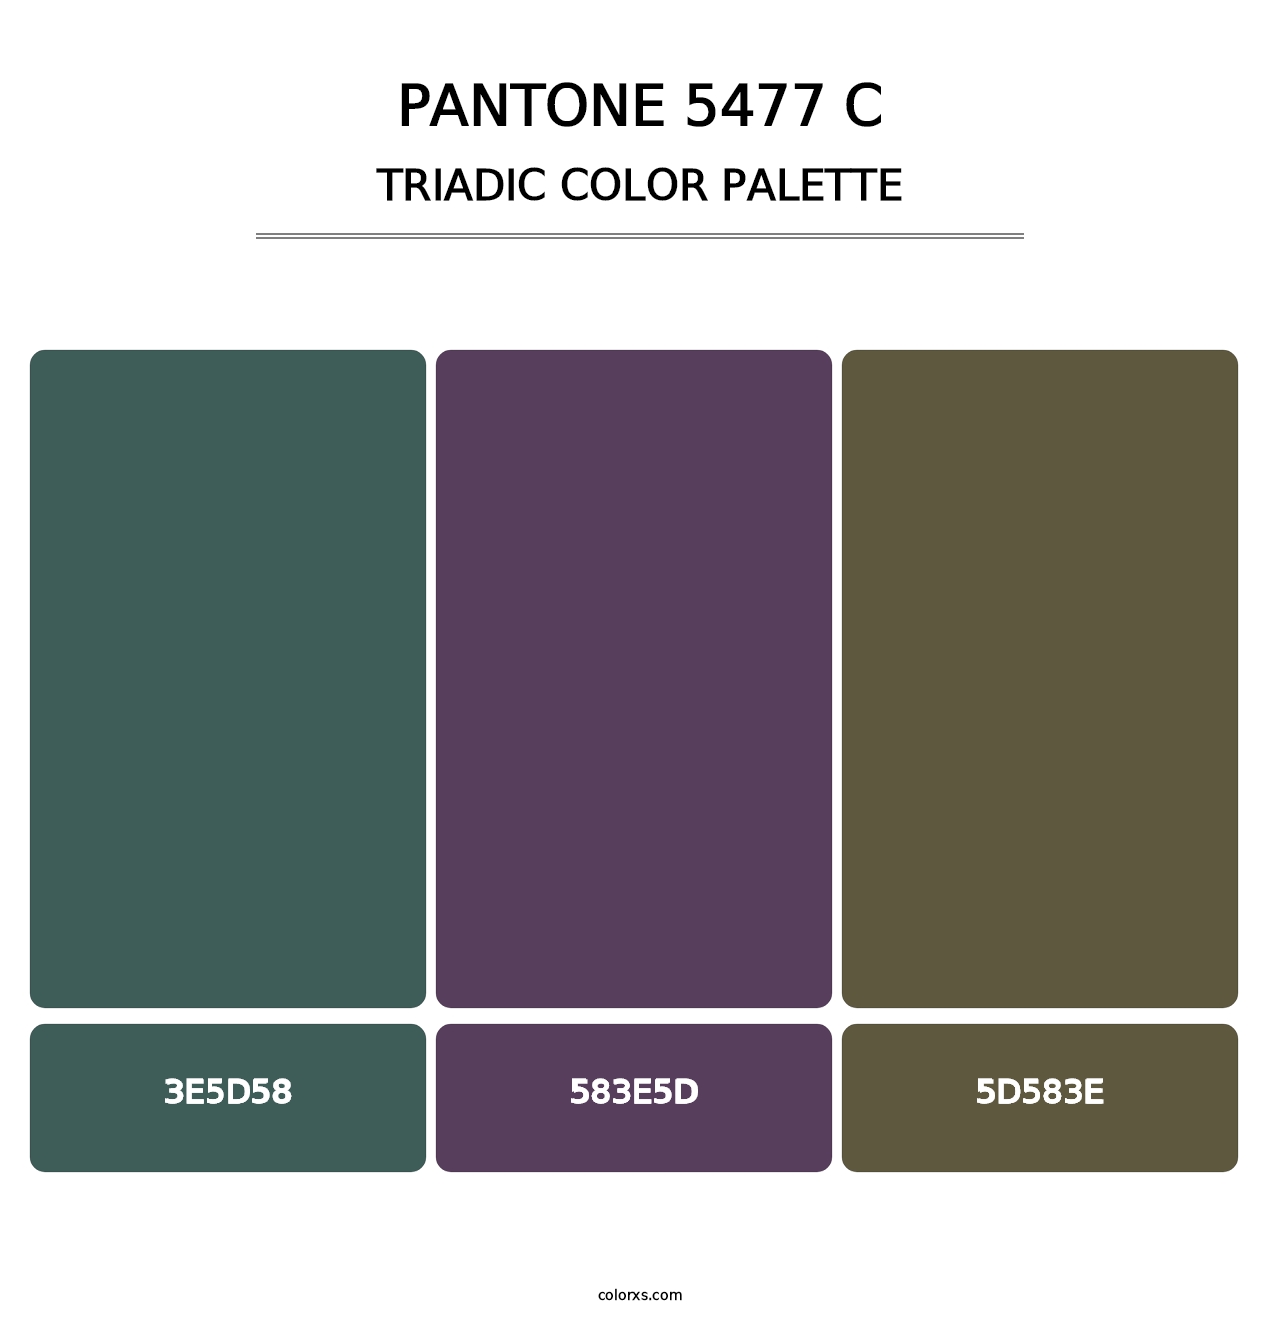 PANTONE 5477 C - Triadic Color Palette